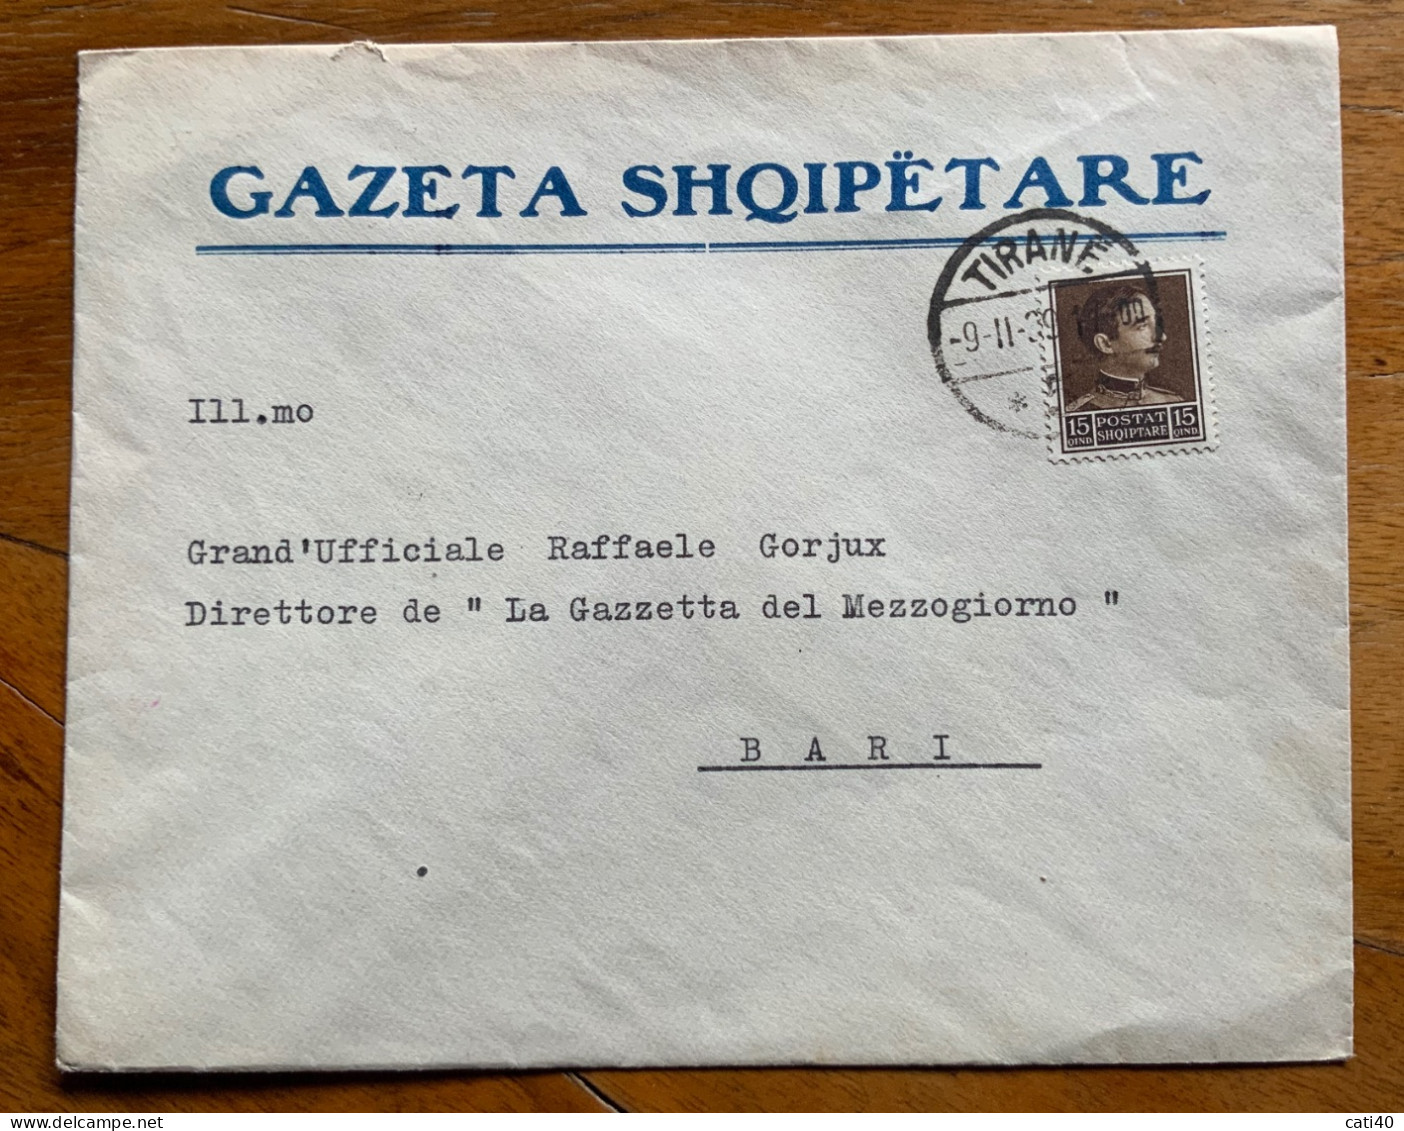 ALBANIA - GAZETA  SHQIPETARE - BUSTA  GIORNALE DA TIRANA 9/11/39 A RAFFAELE GORJUX DIRETTORE GAZZETTA DEL MEZZOGIORNO - Albanien